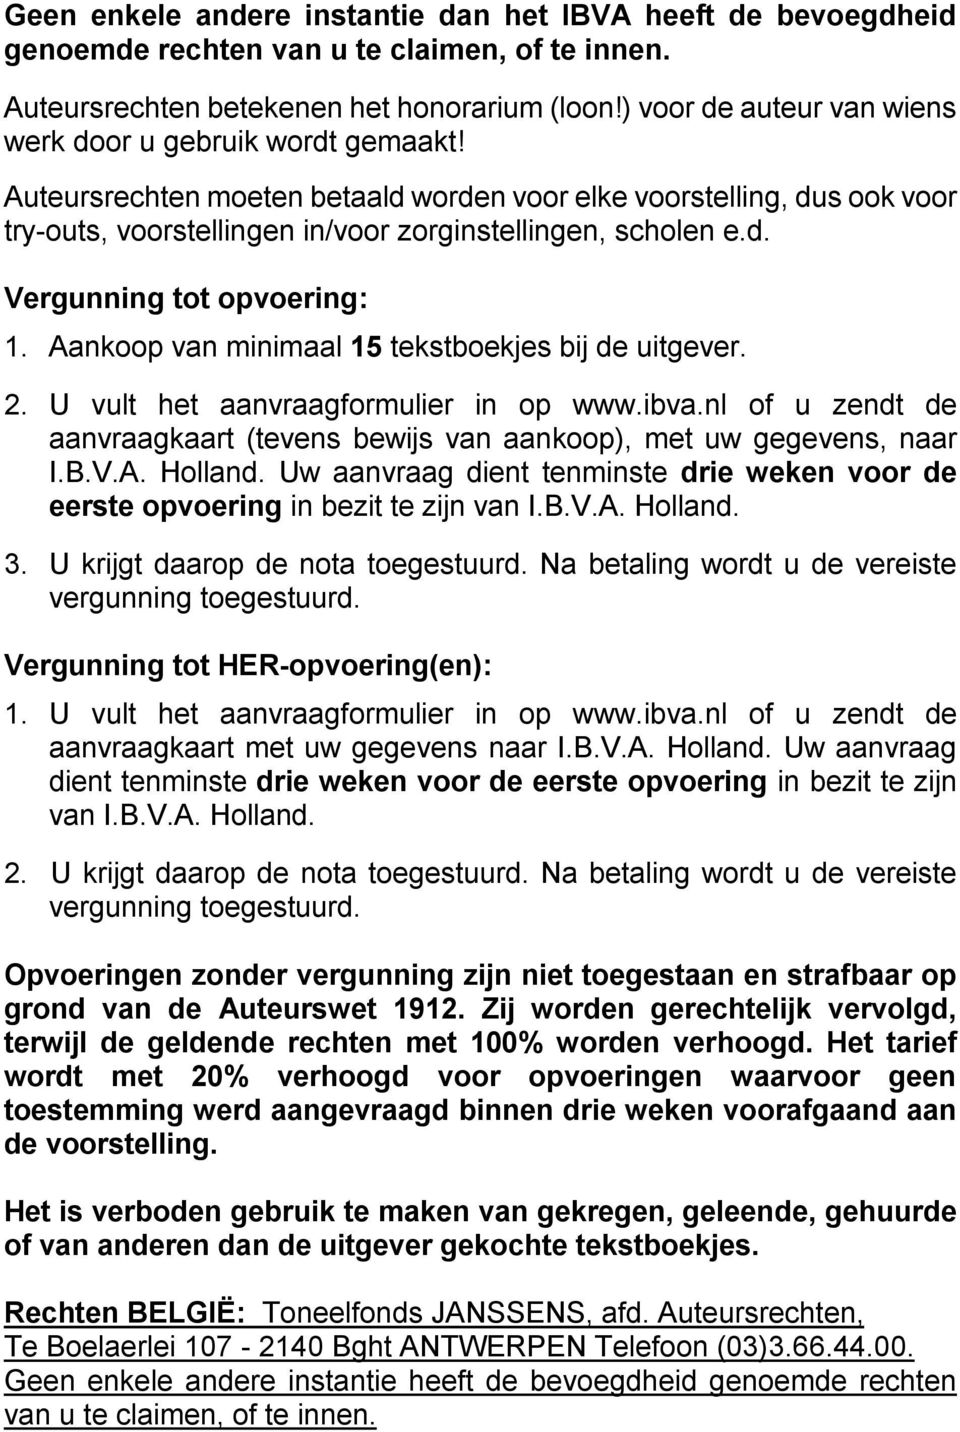 Aankoop van minimaal 15 tekstboekjes bij de uitgever. 2. U vult het aanvraagformulier in op www.ibva.nl of u zendt de aanvraagkaart (tevens bewijs van aankoop), met uw gegevens, naar I.B.V.A. Holland.